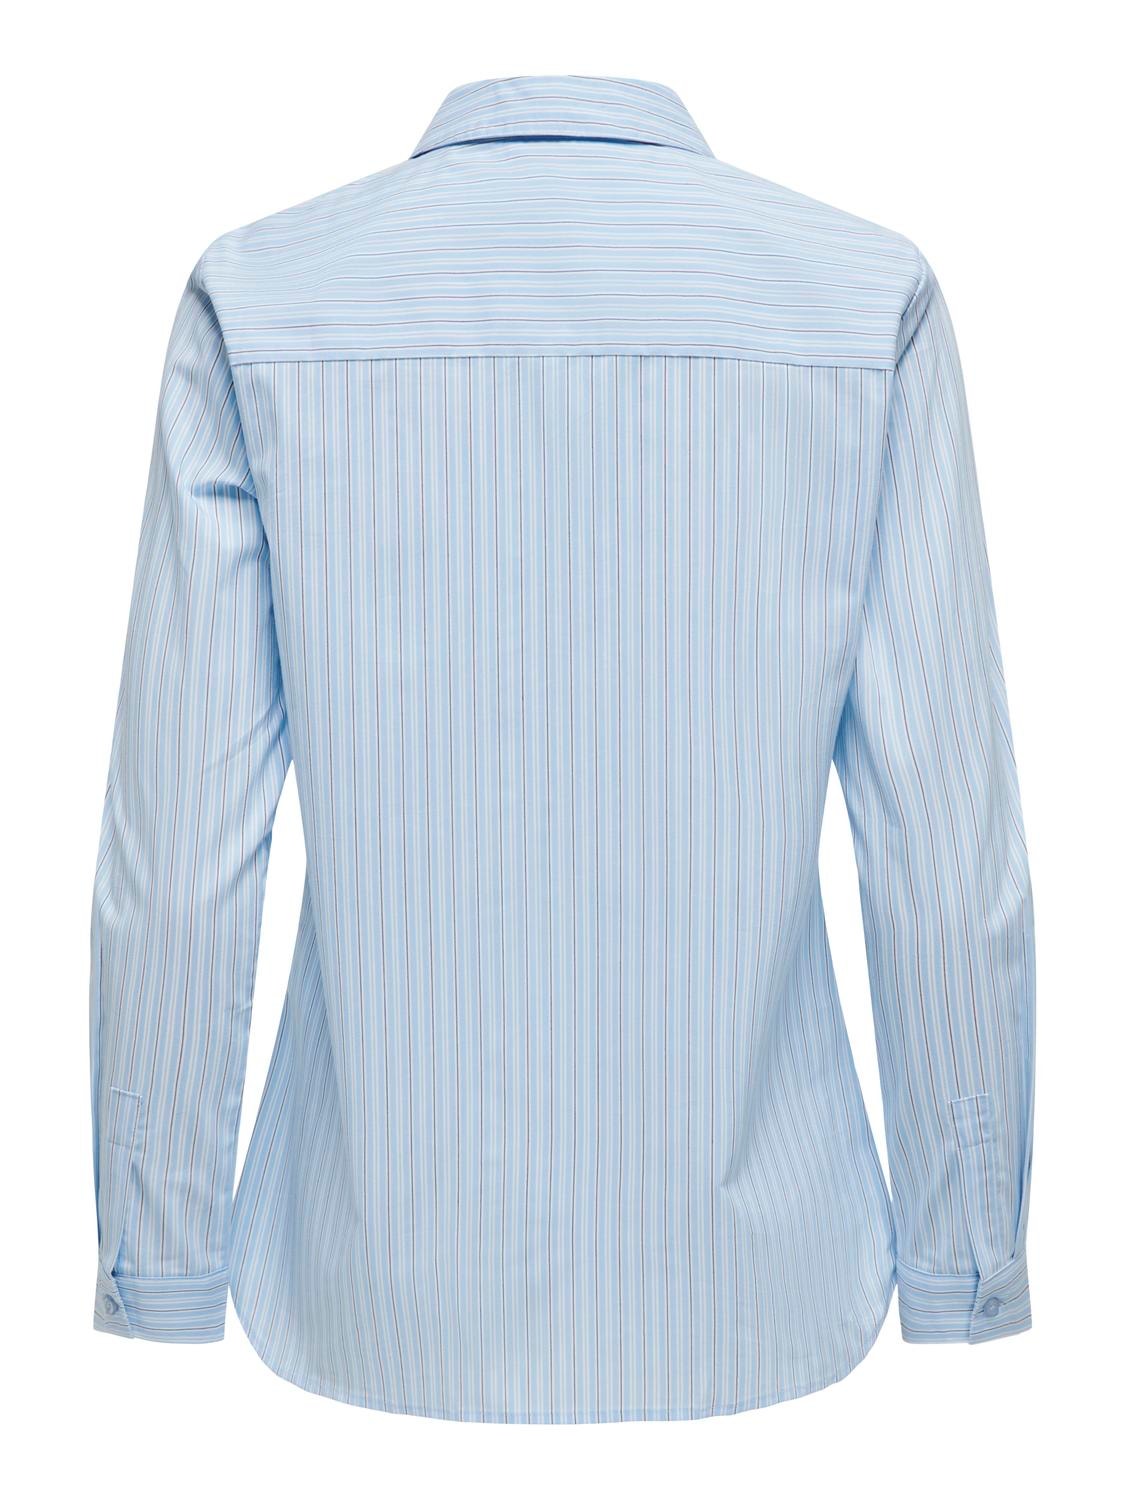 ONLY Regular Fit Shirt collar Buttoned cuffs Slim fitted sleeves Shirt -Kentucky Blue - 15149877